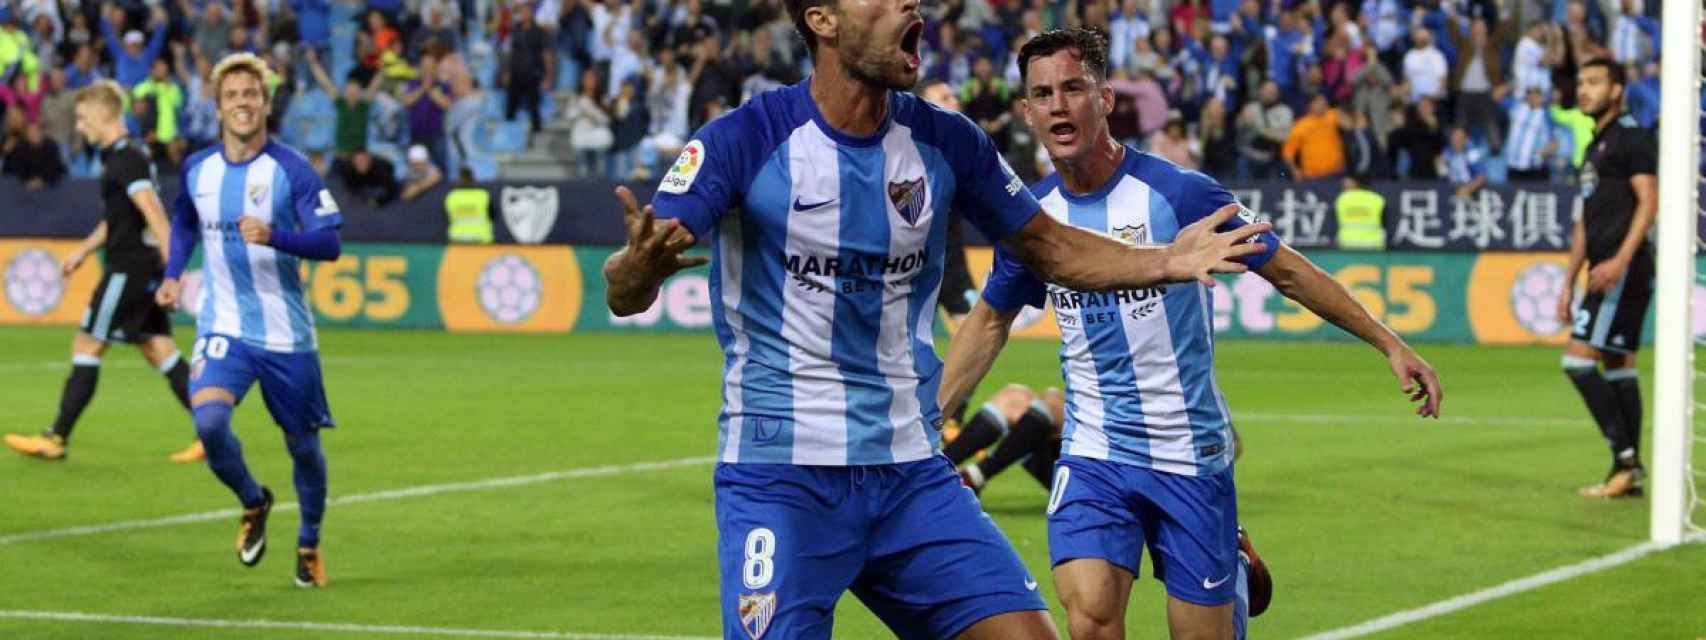 Adrián celebra un gol del Málaga.